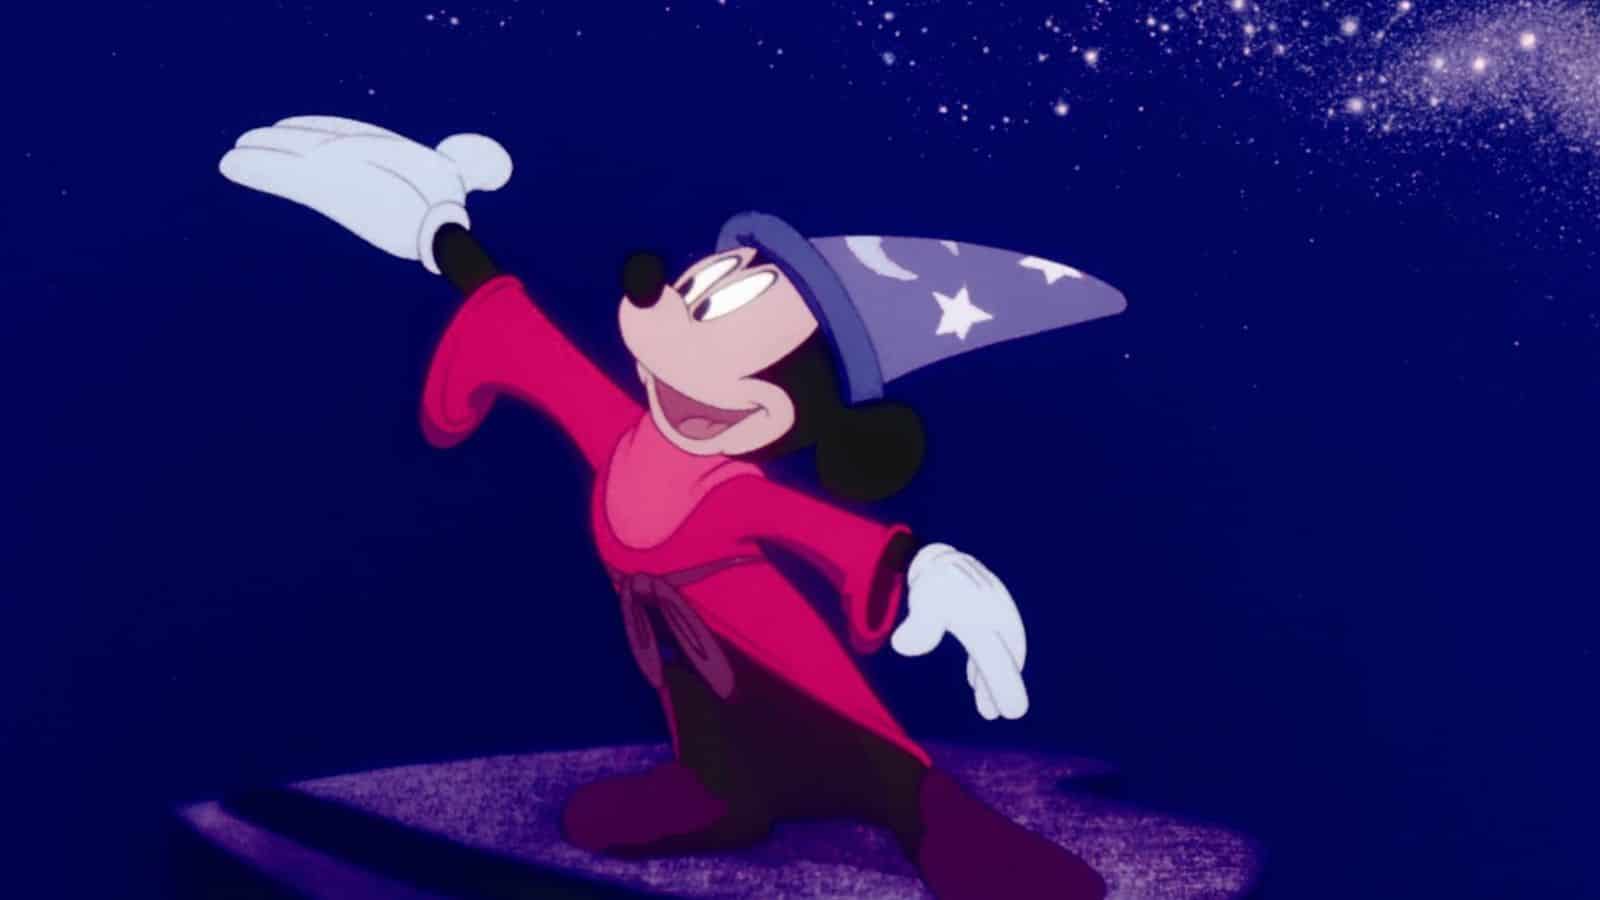 Fantasia (1940) - Walt Disney